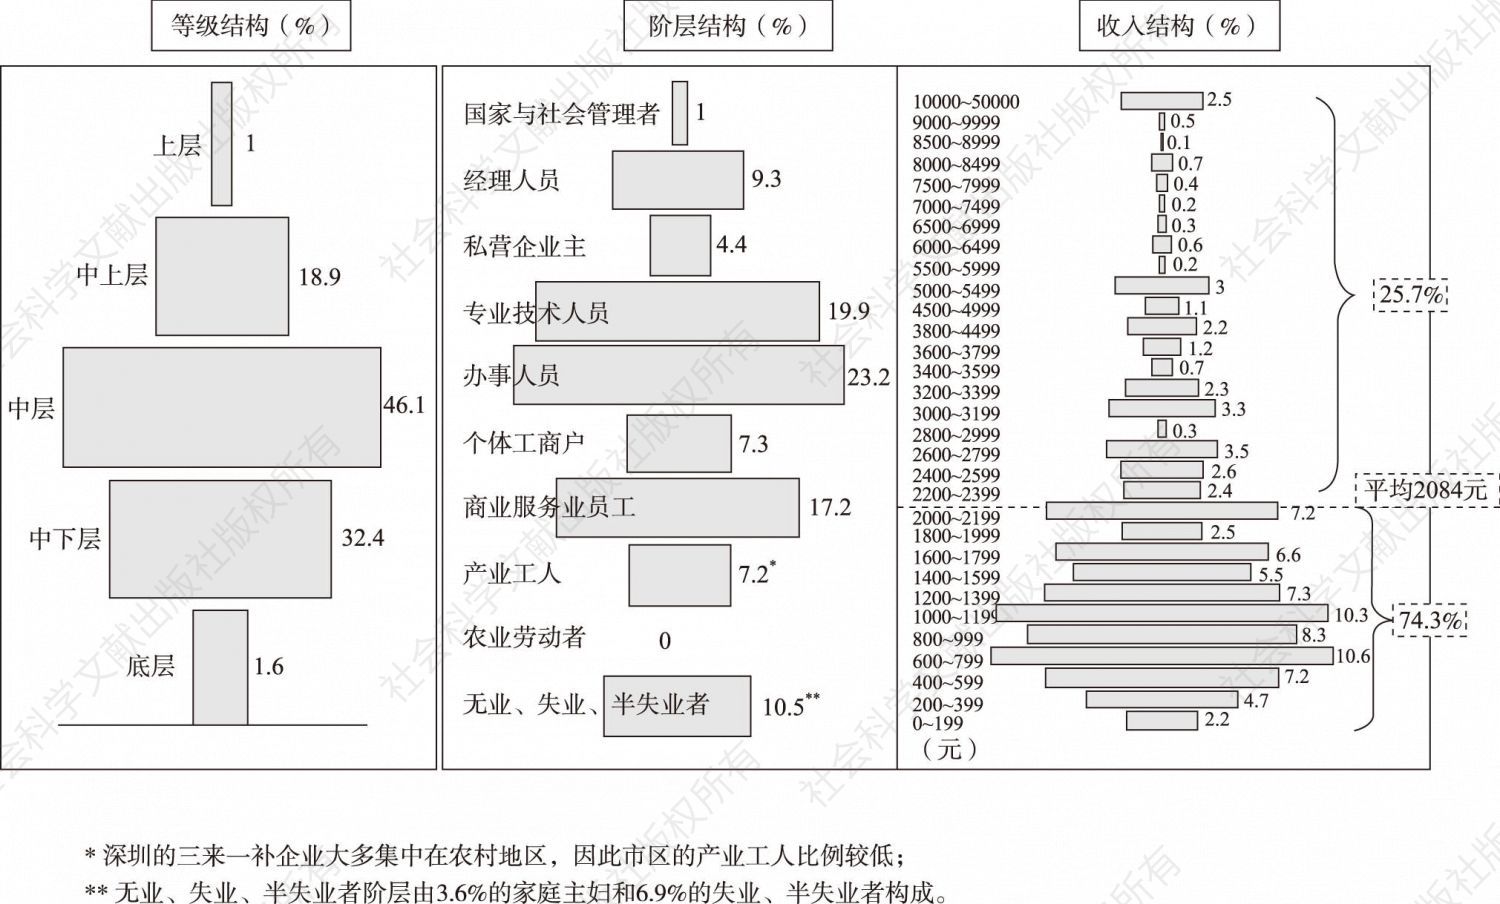 图2 深圳市区阶层分化形态